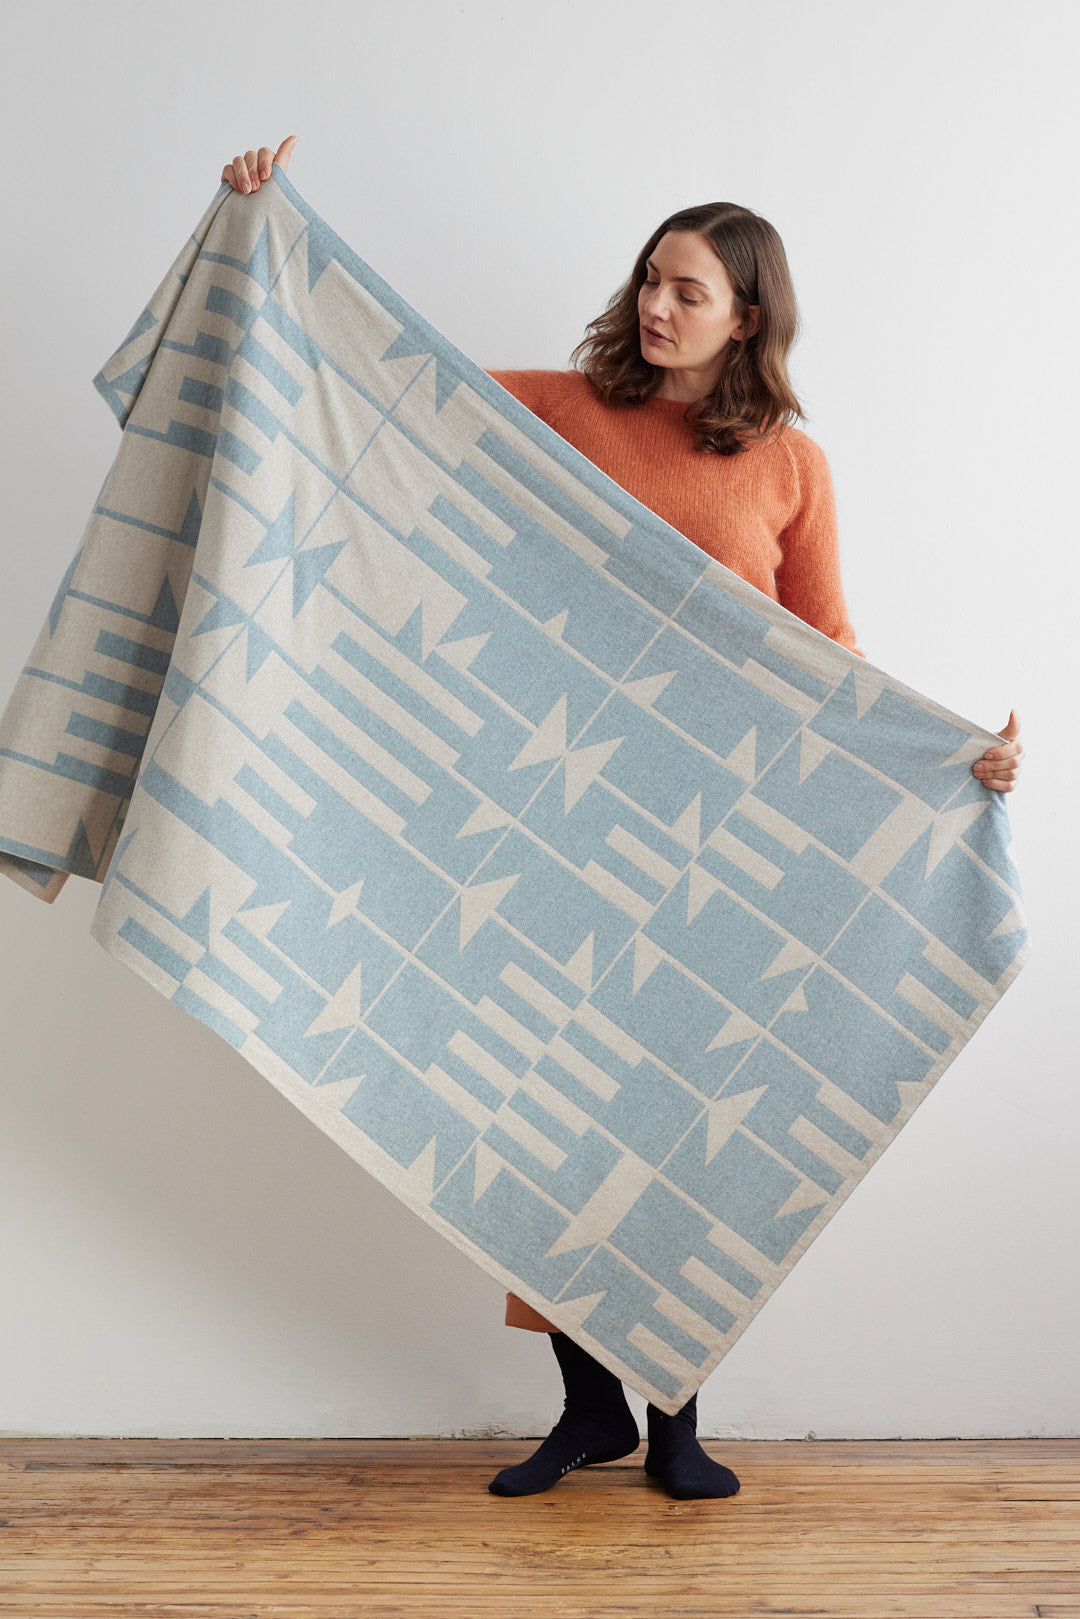 Blanket "Keel" - Haar & Swansdown